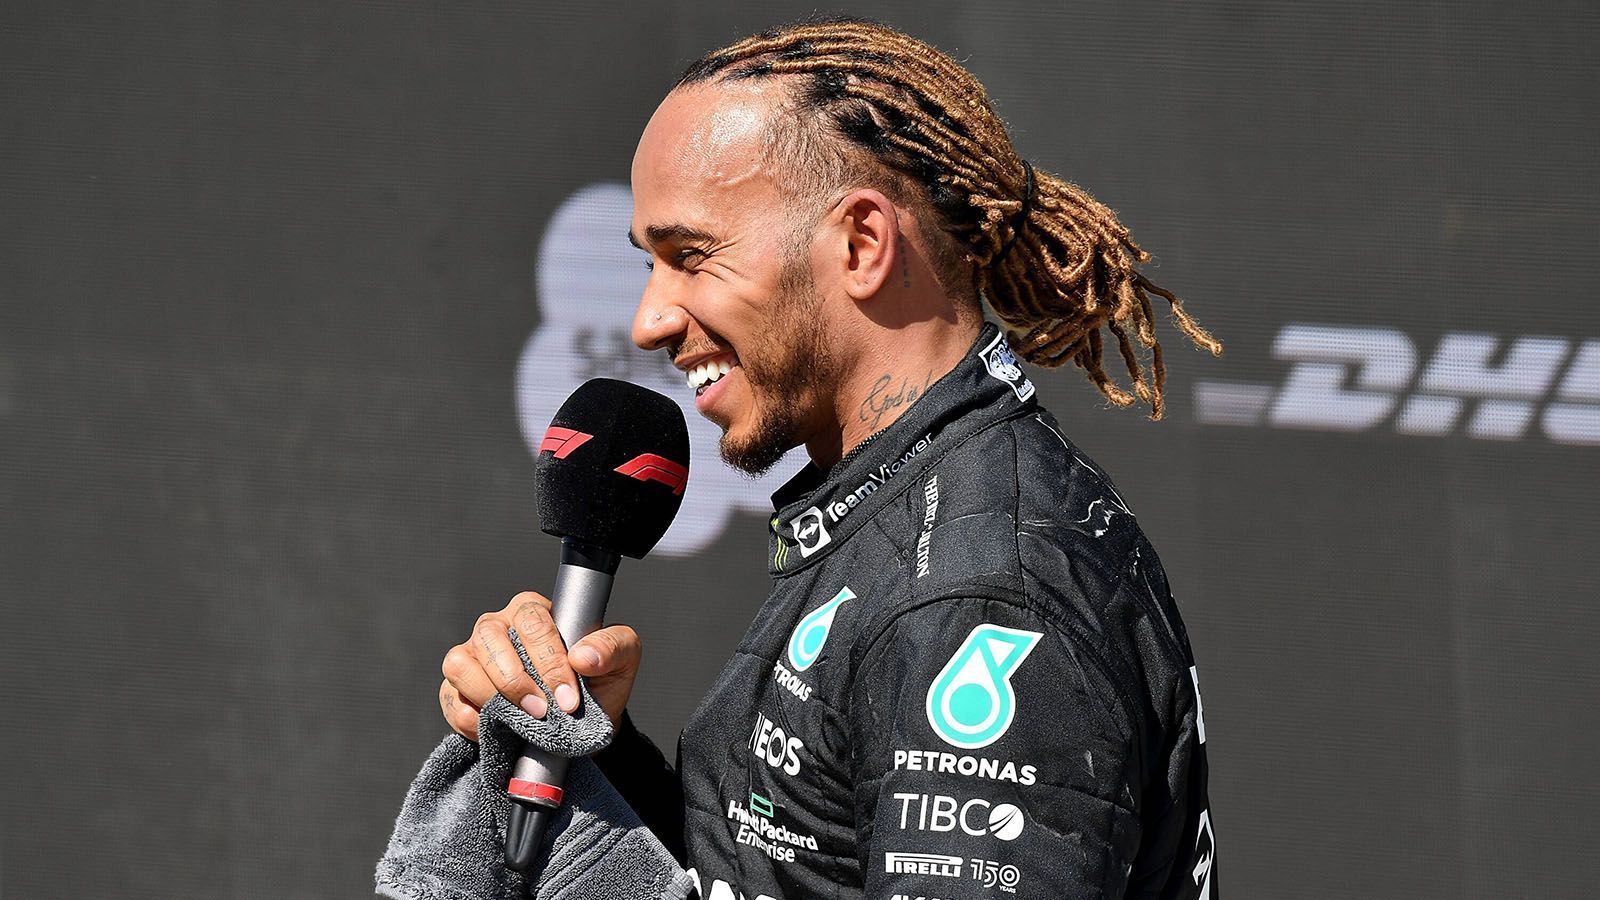 
                <strong>Gewinner: Lewis Hamilton</strong><br>
                Viel zu lachen hatte Lewis Hamilton in dieser Saison bisher nicht. In Kanada, wo er vor 15 Jahren seinen ersten Sieg holte, liefert der Brite eine seiner besten Leistungen in diesem Jahr ab. Das Qualifying beendet der siebenmalige Weltmeister auf Platz vier. Die Rennpace des Mercedes war deutlich besser als in den vergangenen Wochen. Mit einer guten Leistung fährt Hamilton zum zweiten Mal in dieser Saison auf das Treppchen und meldet sich im Kreis der erweiterten Podiumskandidaten zurück. "Ein unglaubliches Gefühl", resümiert der 37-Jährige nach dem Rennen.
              